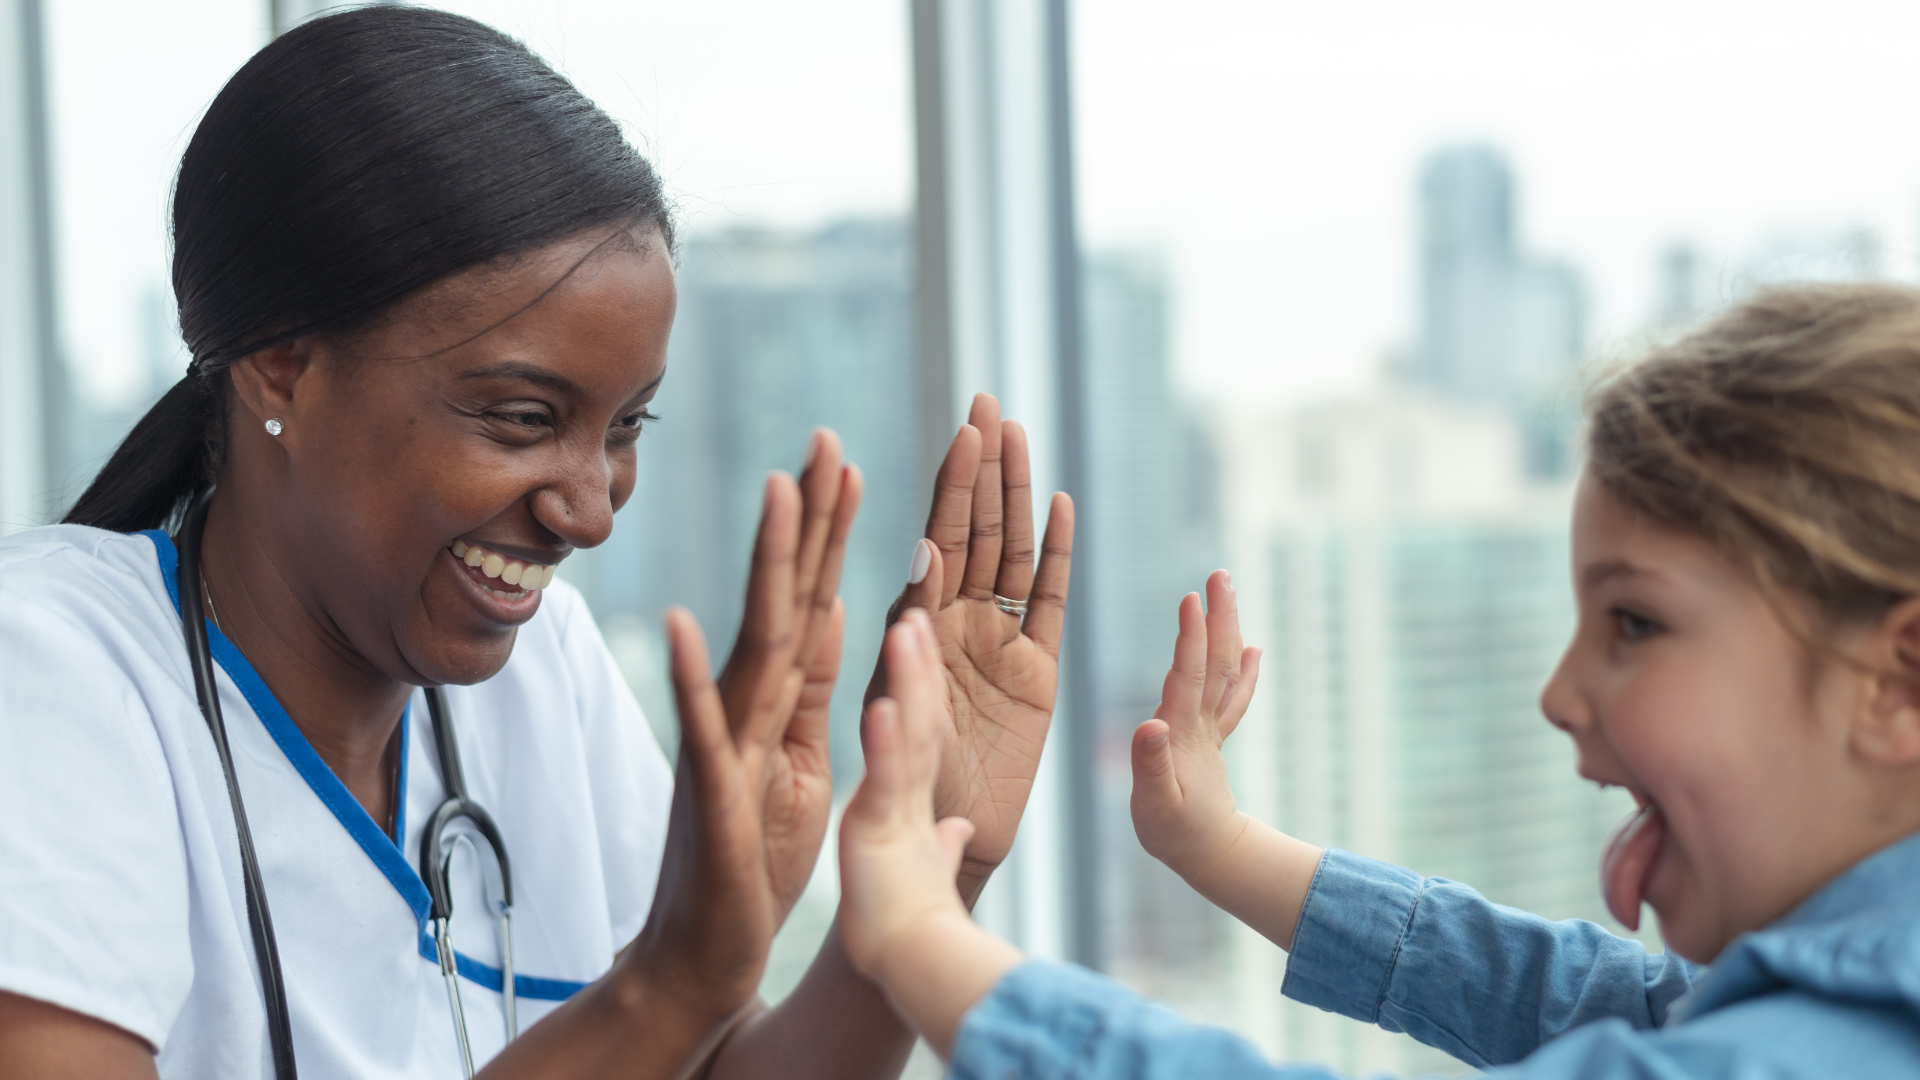 A nurse gives a child patient high fives.